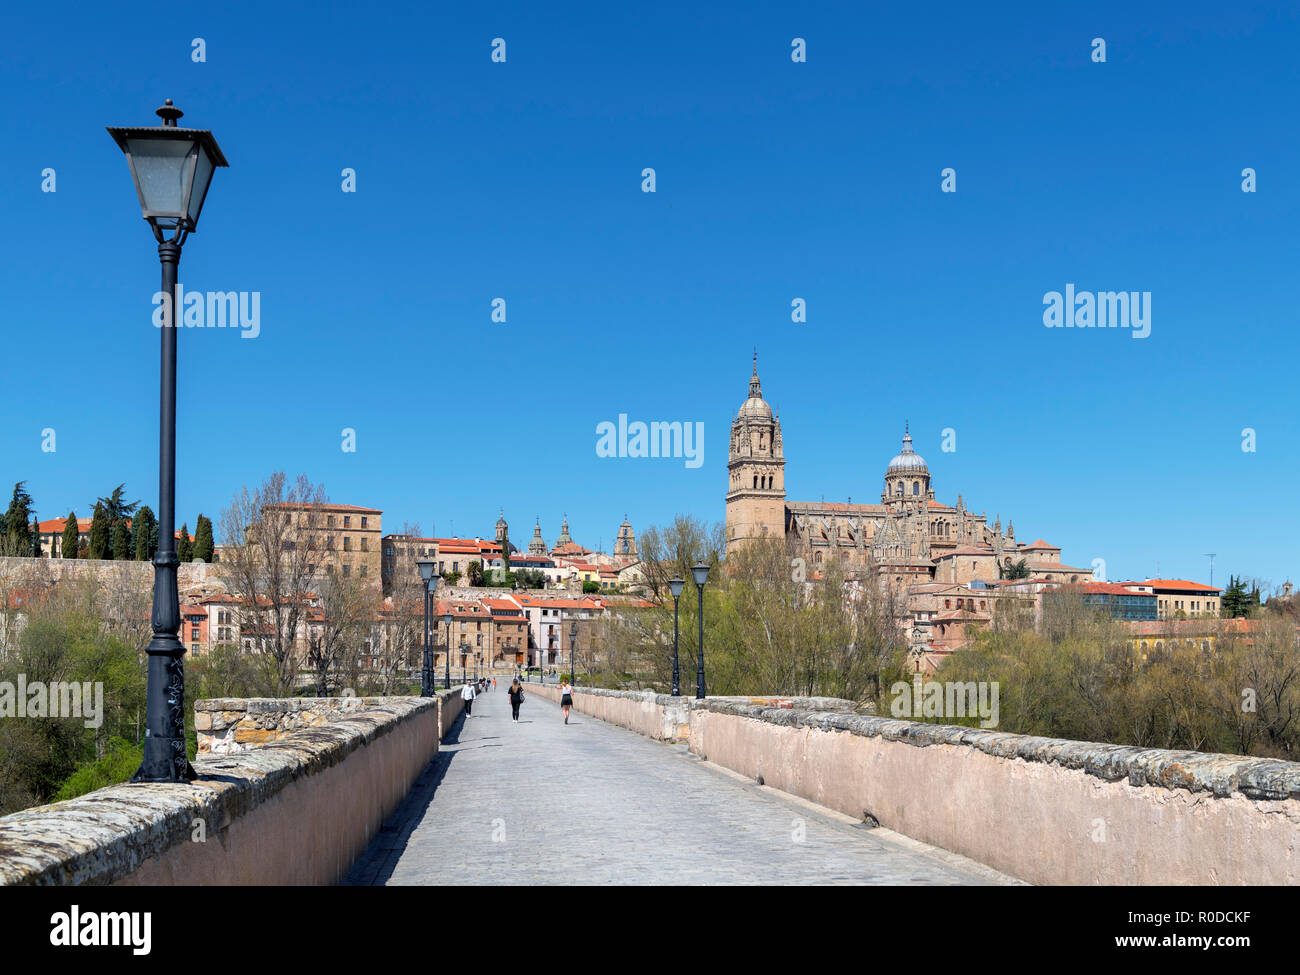 Vue sur la vieille ville et des cathédrales de la Puente Romano (pont romain), Salamanca, Castilla y Leon, Espagne Banque D'Images